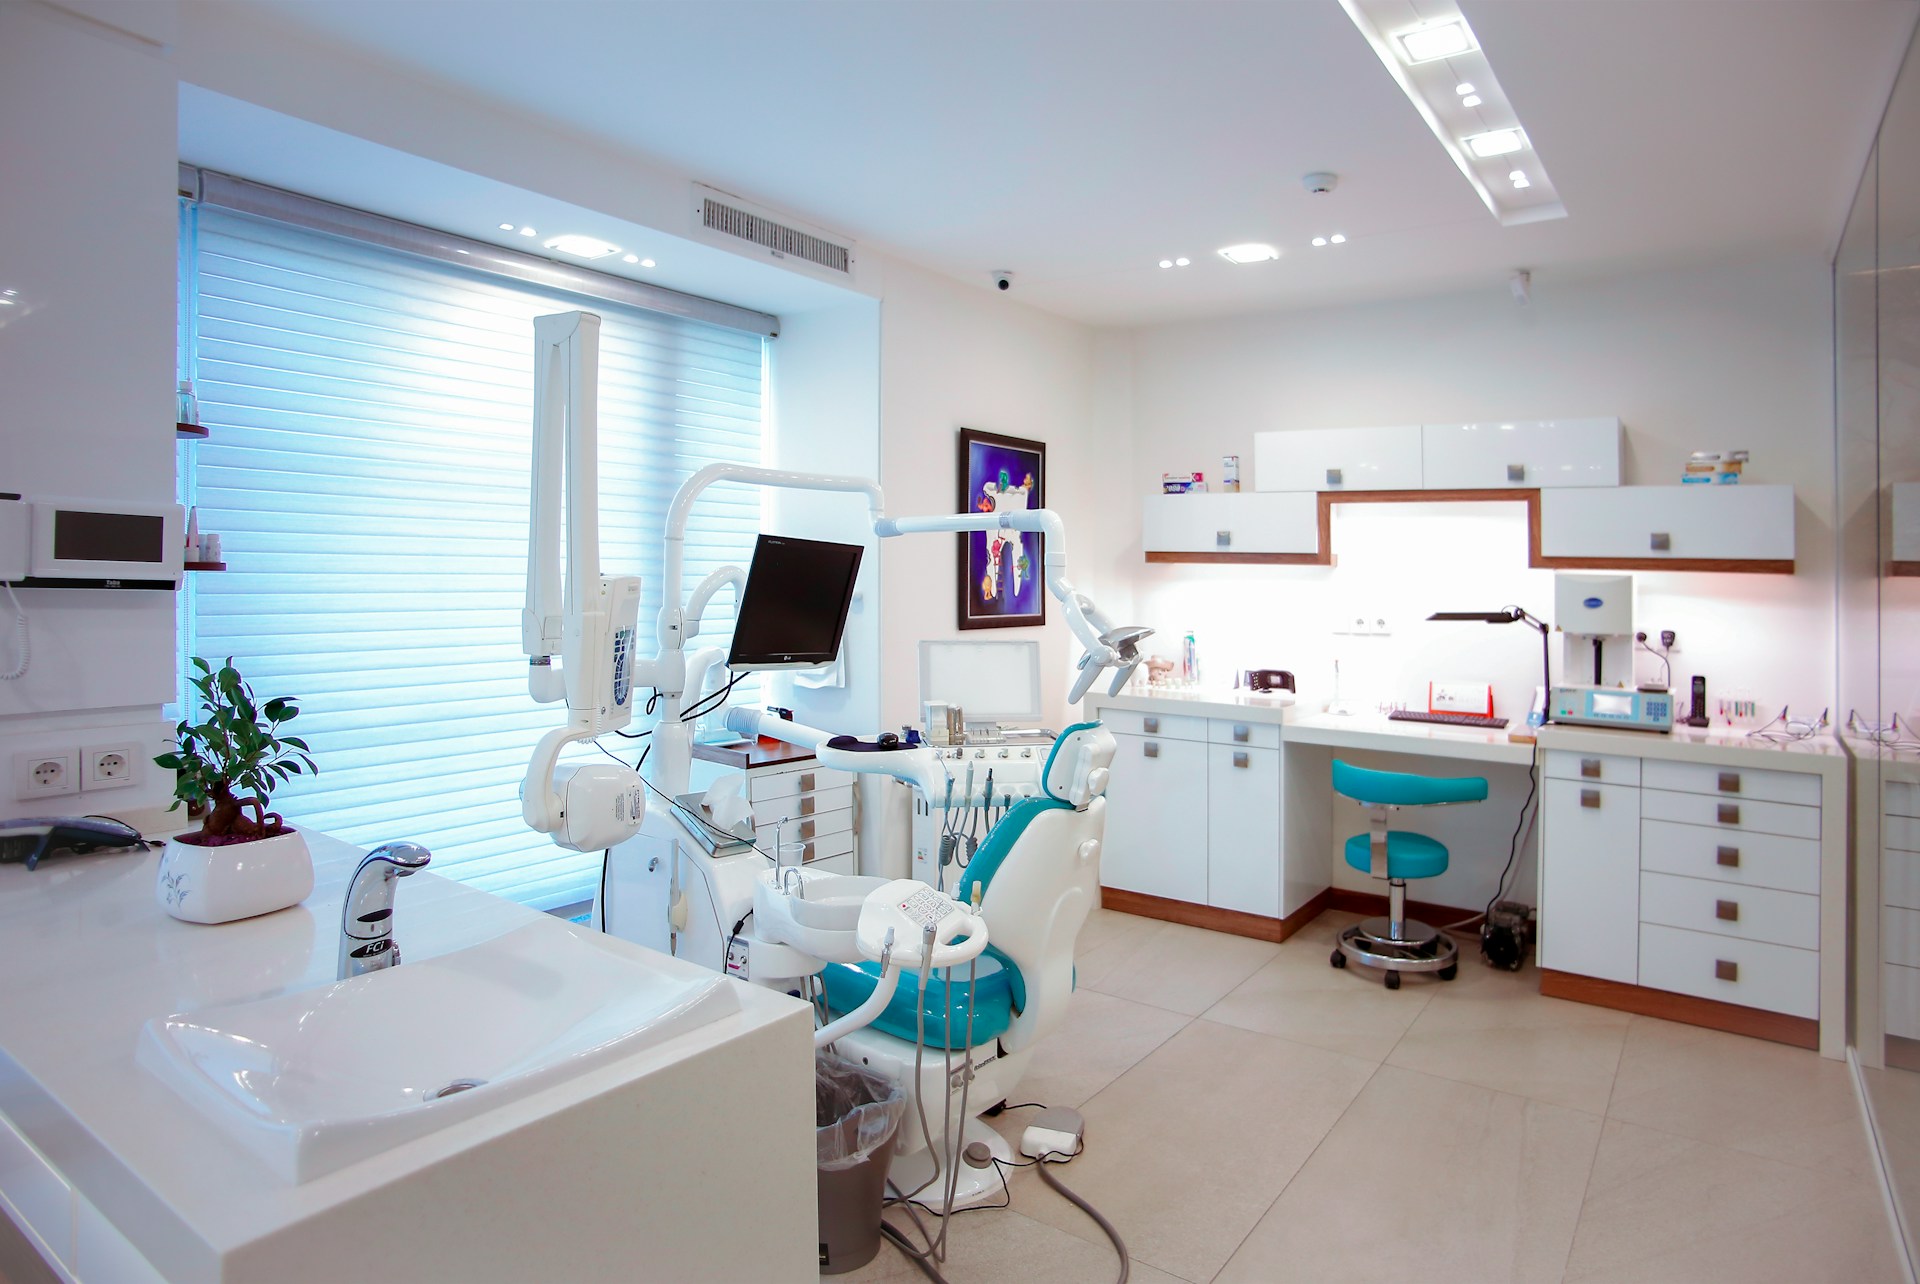 Cele i założenia kursu ortodontycznego